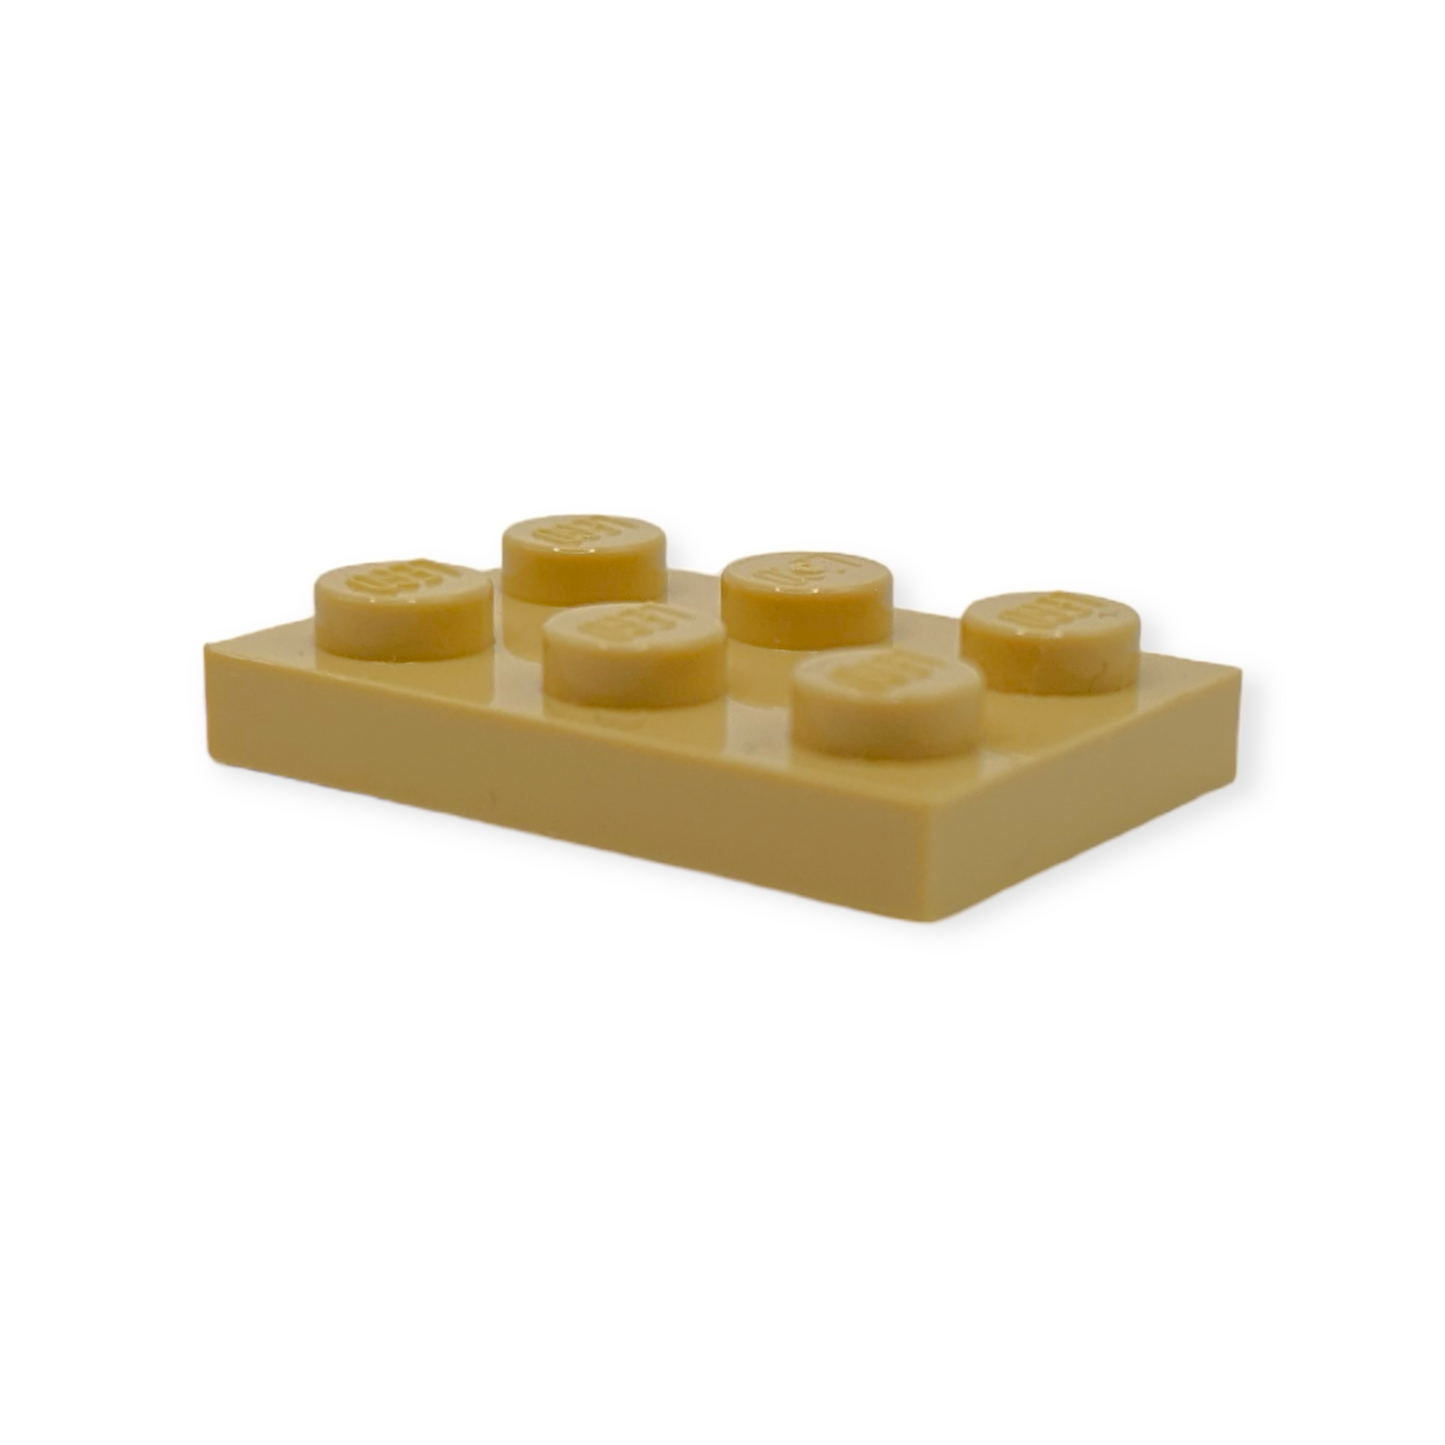 LEGO Plate  - 2x3 in Tan